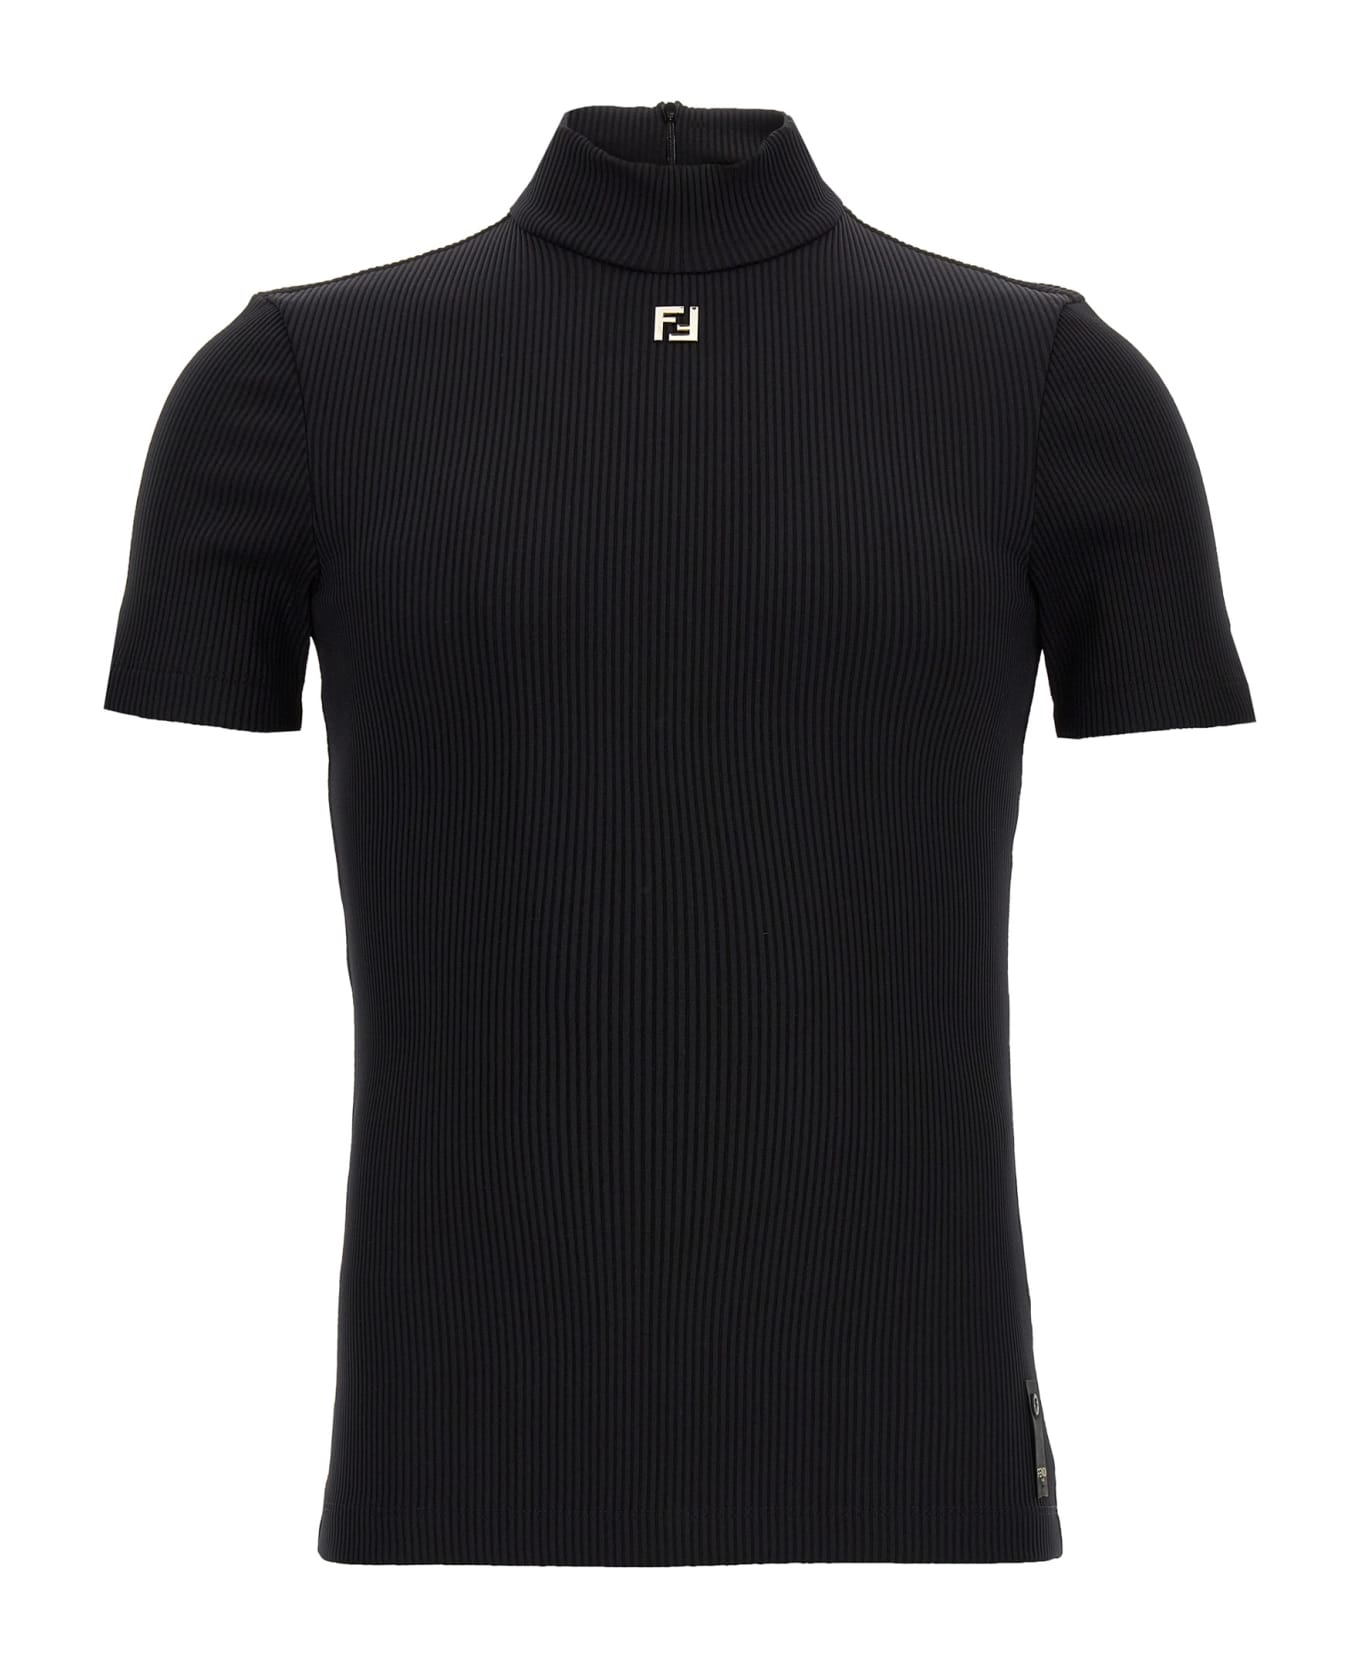 Fendi 'ff' Sweater - Black   ニットウェア